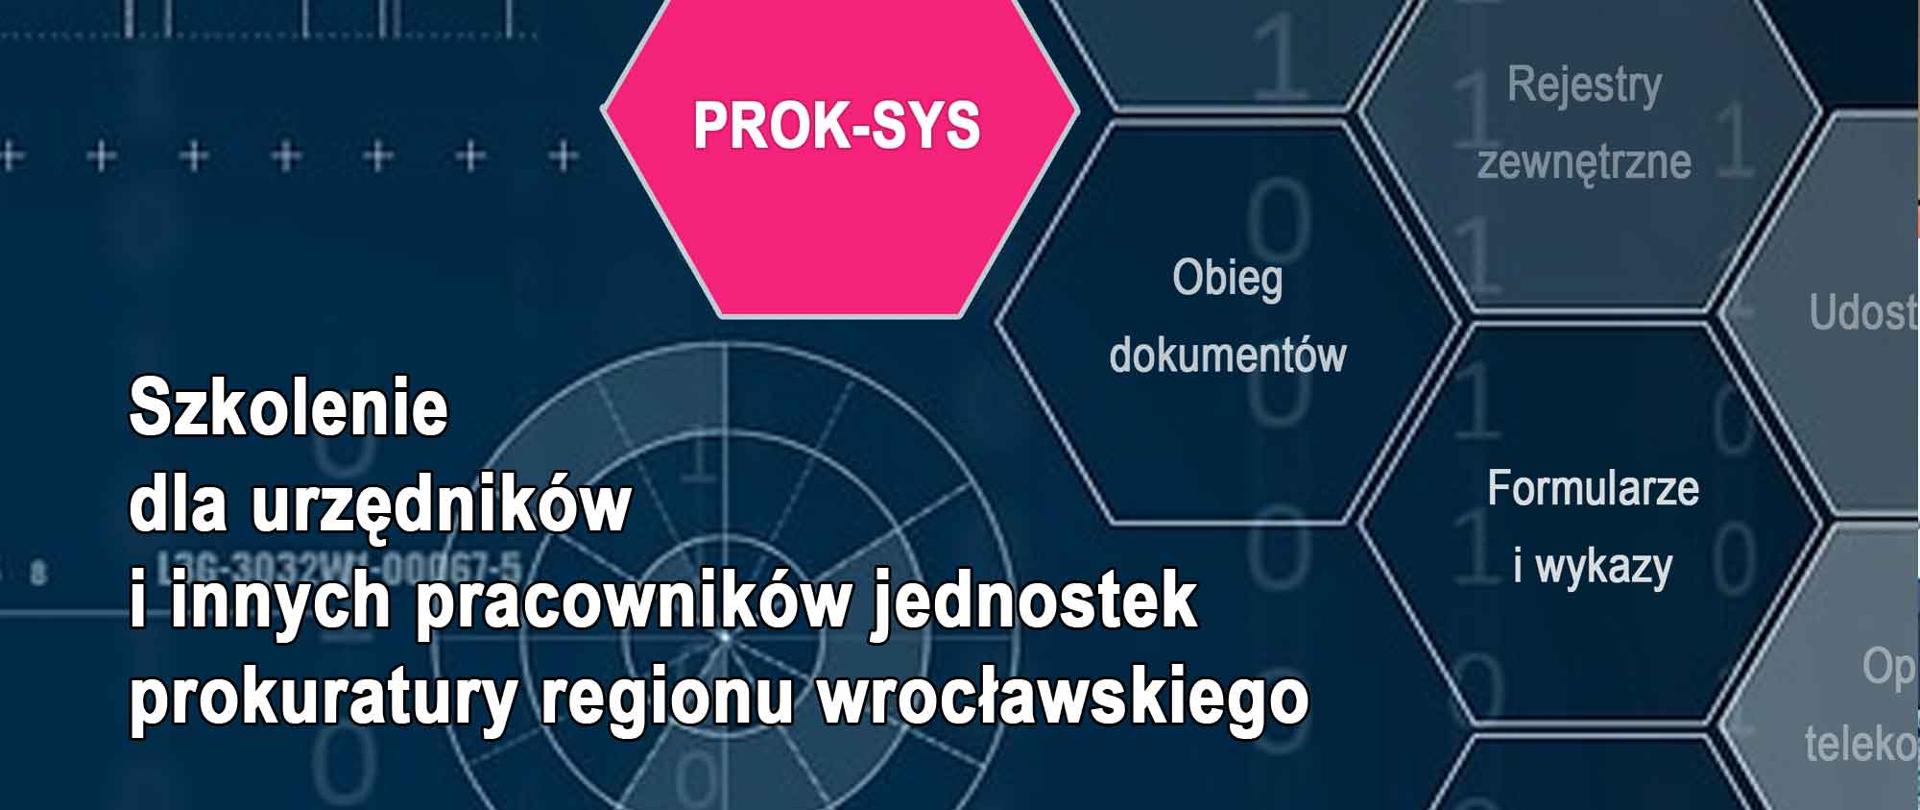 Informacja o szkoleniu - Szkolenie dla urzędników i innych pracowników jednostek prokuratury regionu wrocławskiego